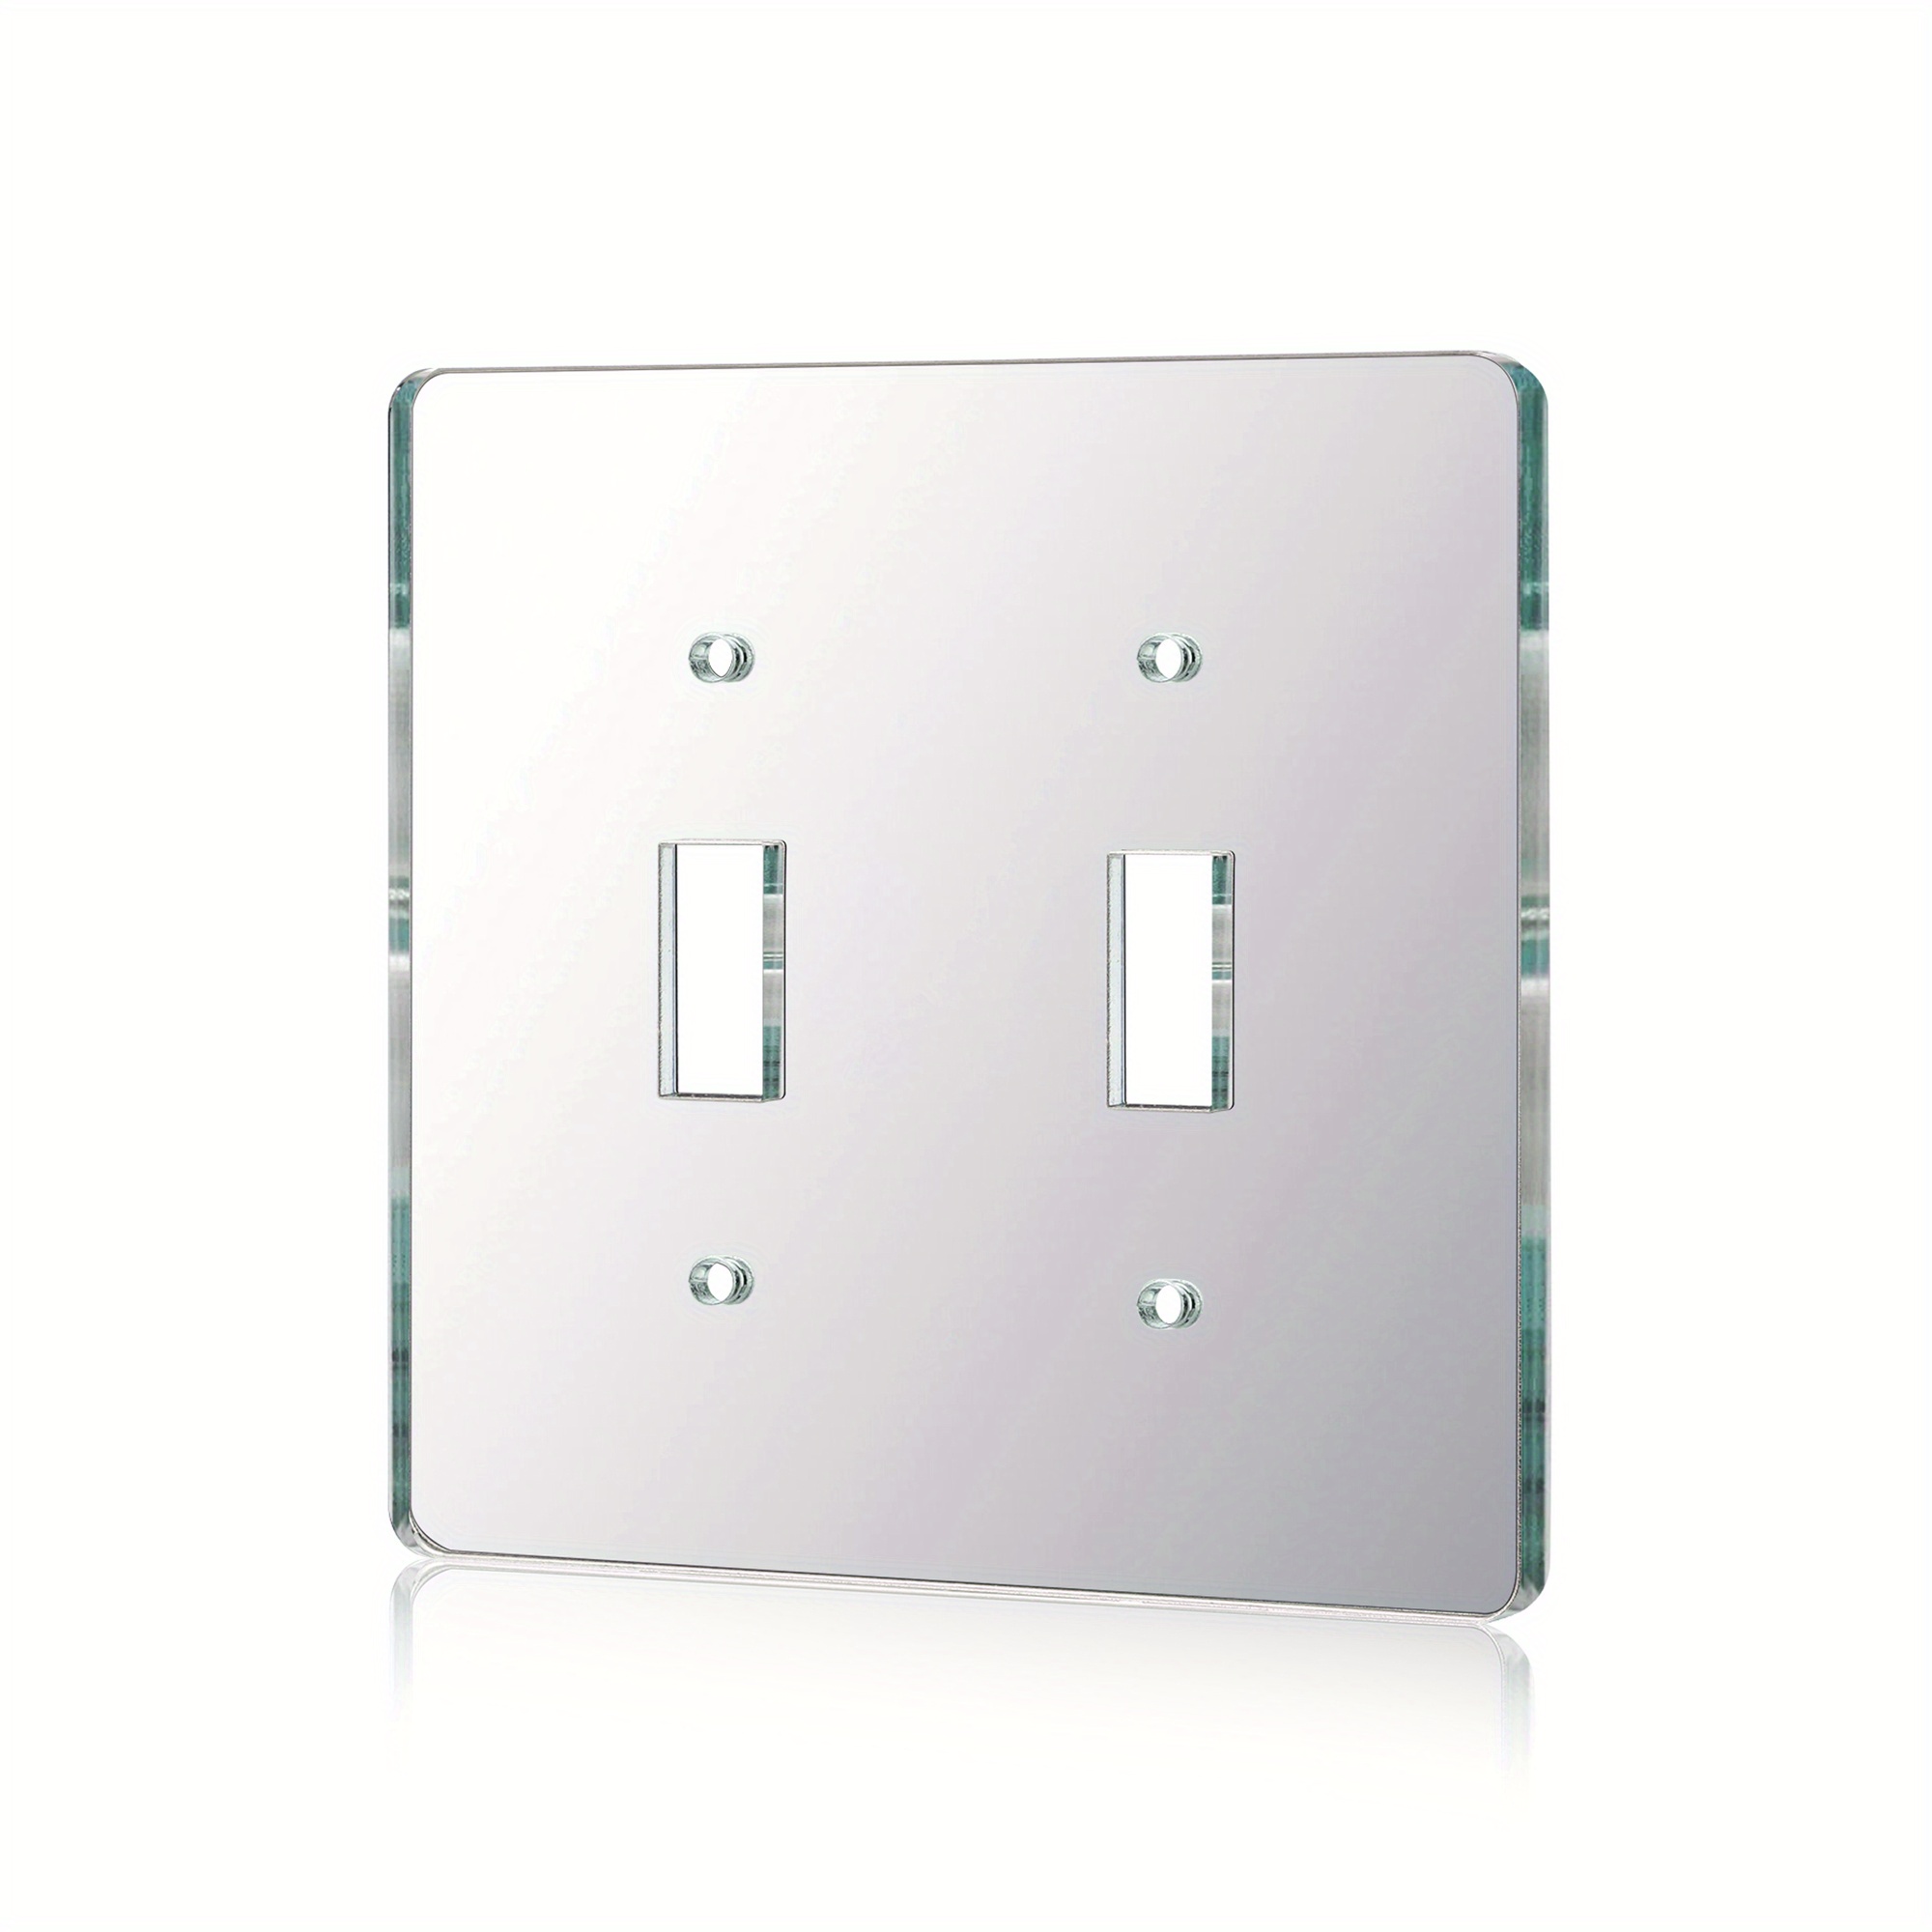 Placa de pared con interruptor de luz de espejo, interruptor doble